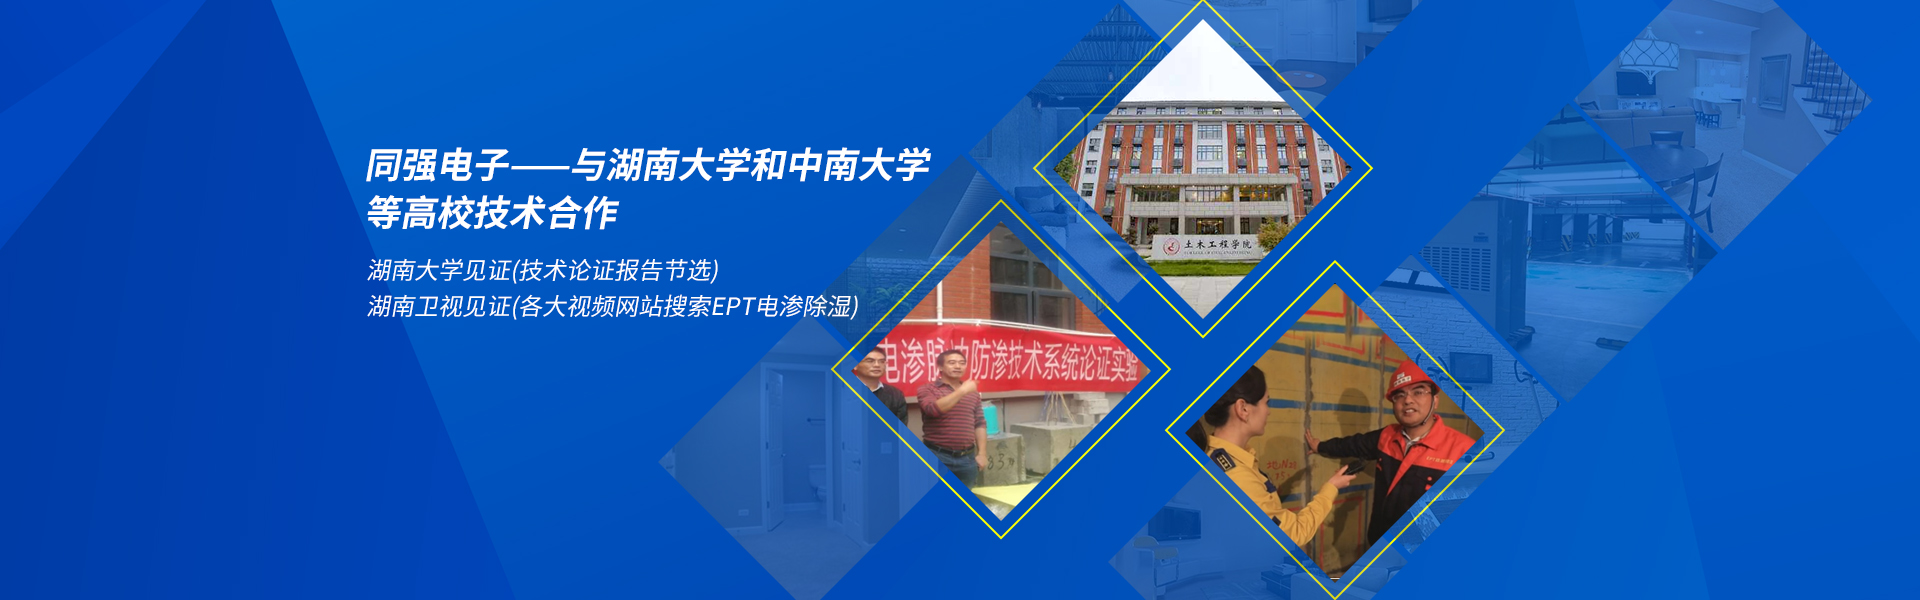 湖南省长沙市同强电子科技有限公司